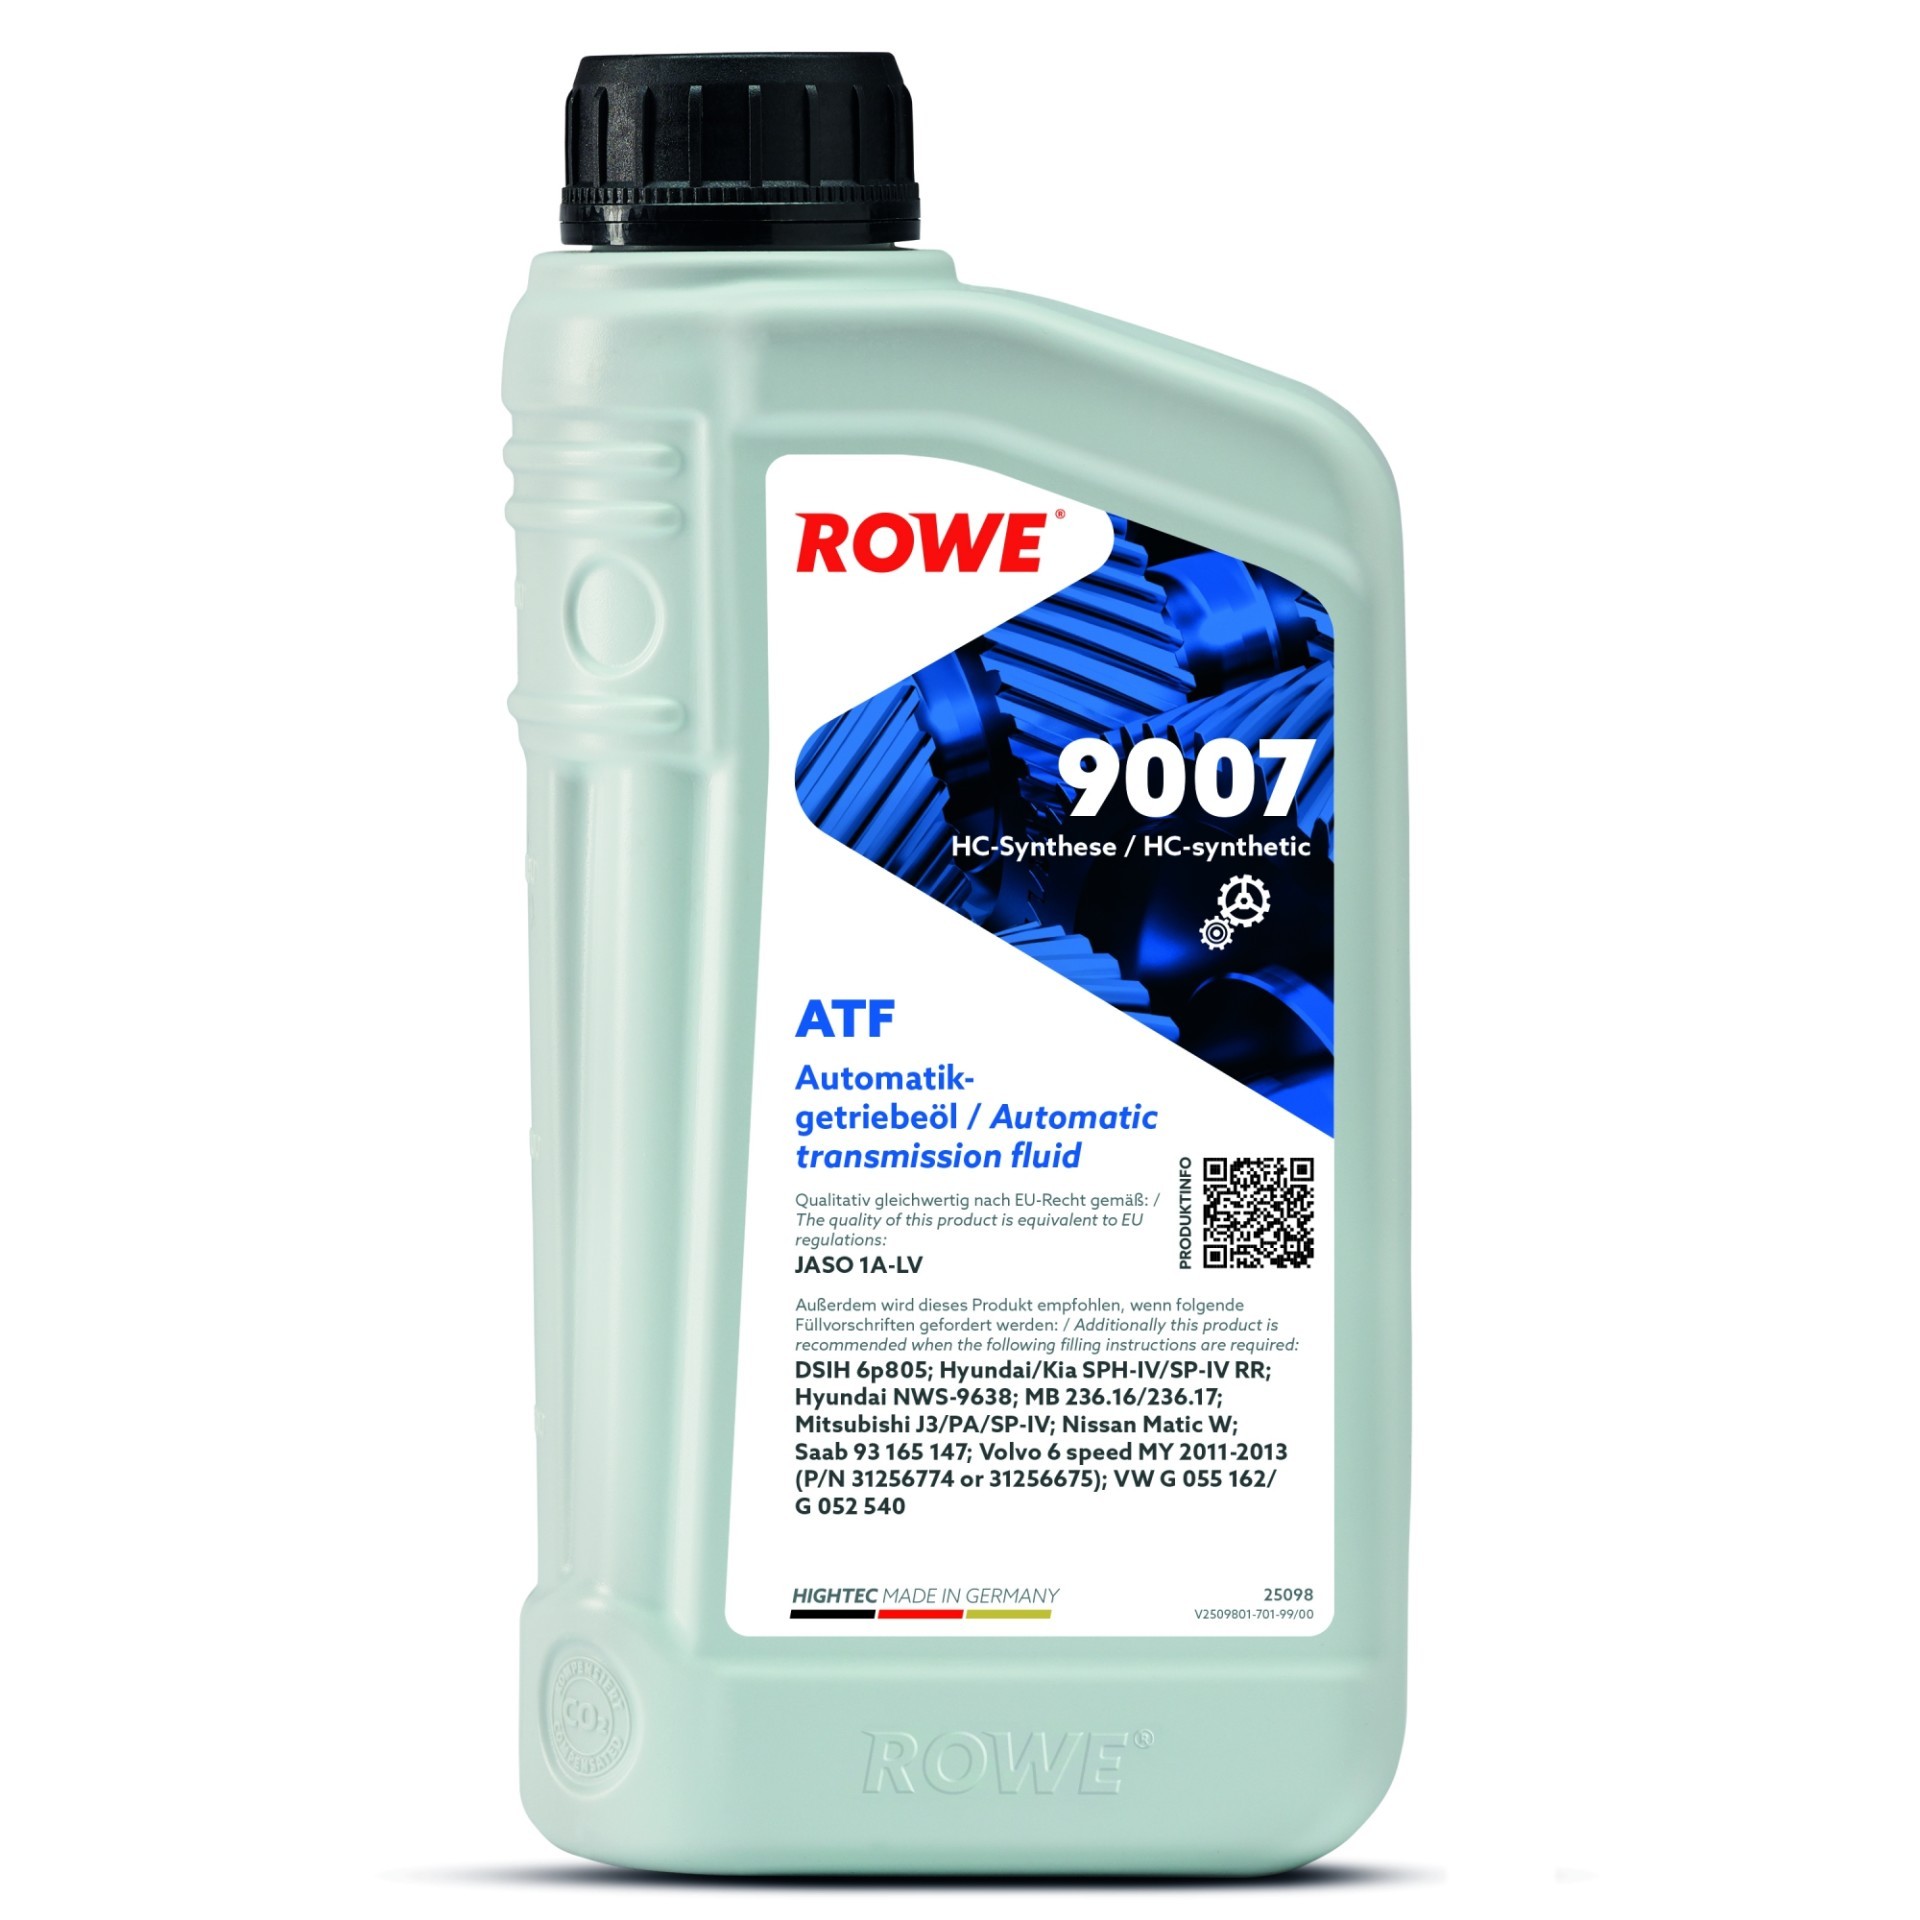 ROWE Automatikgetriebeöl Getriebeöl Teilsynthetiköl 1 L (25098-0010-99)